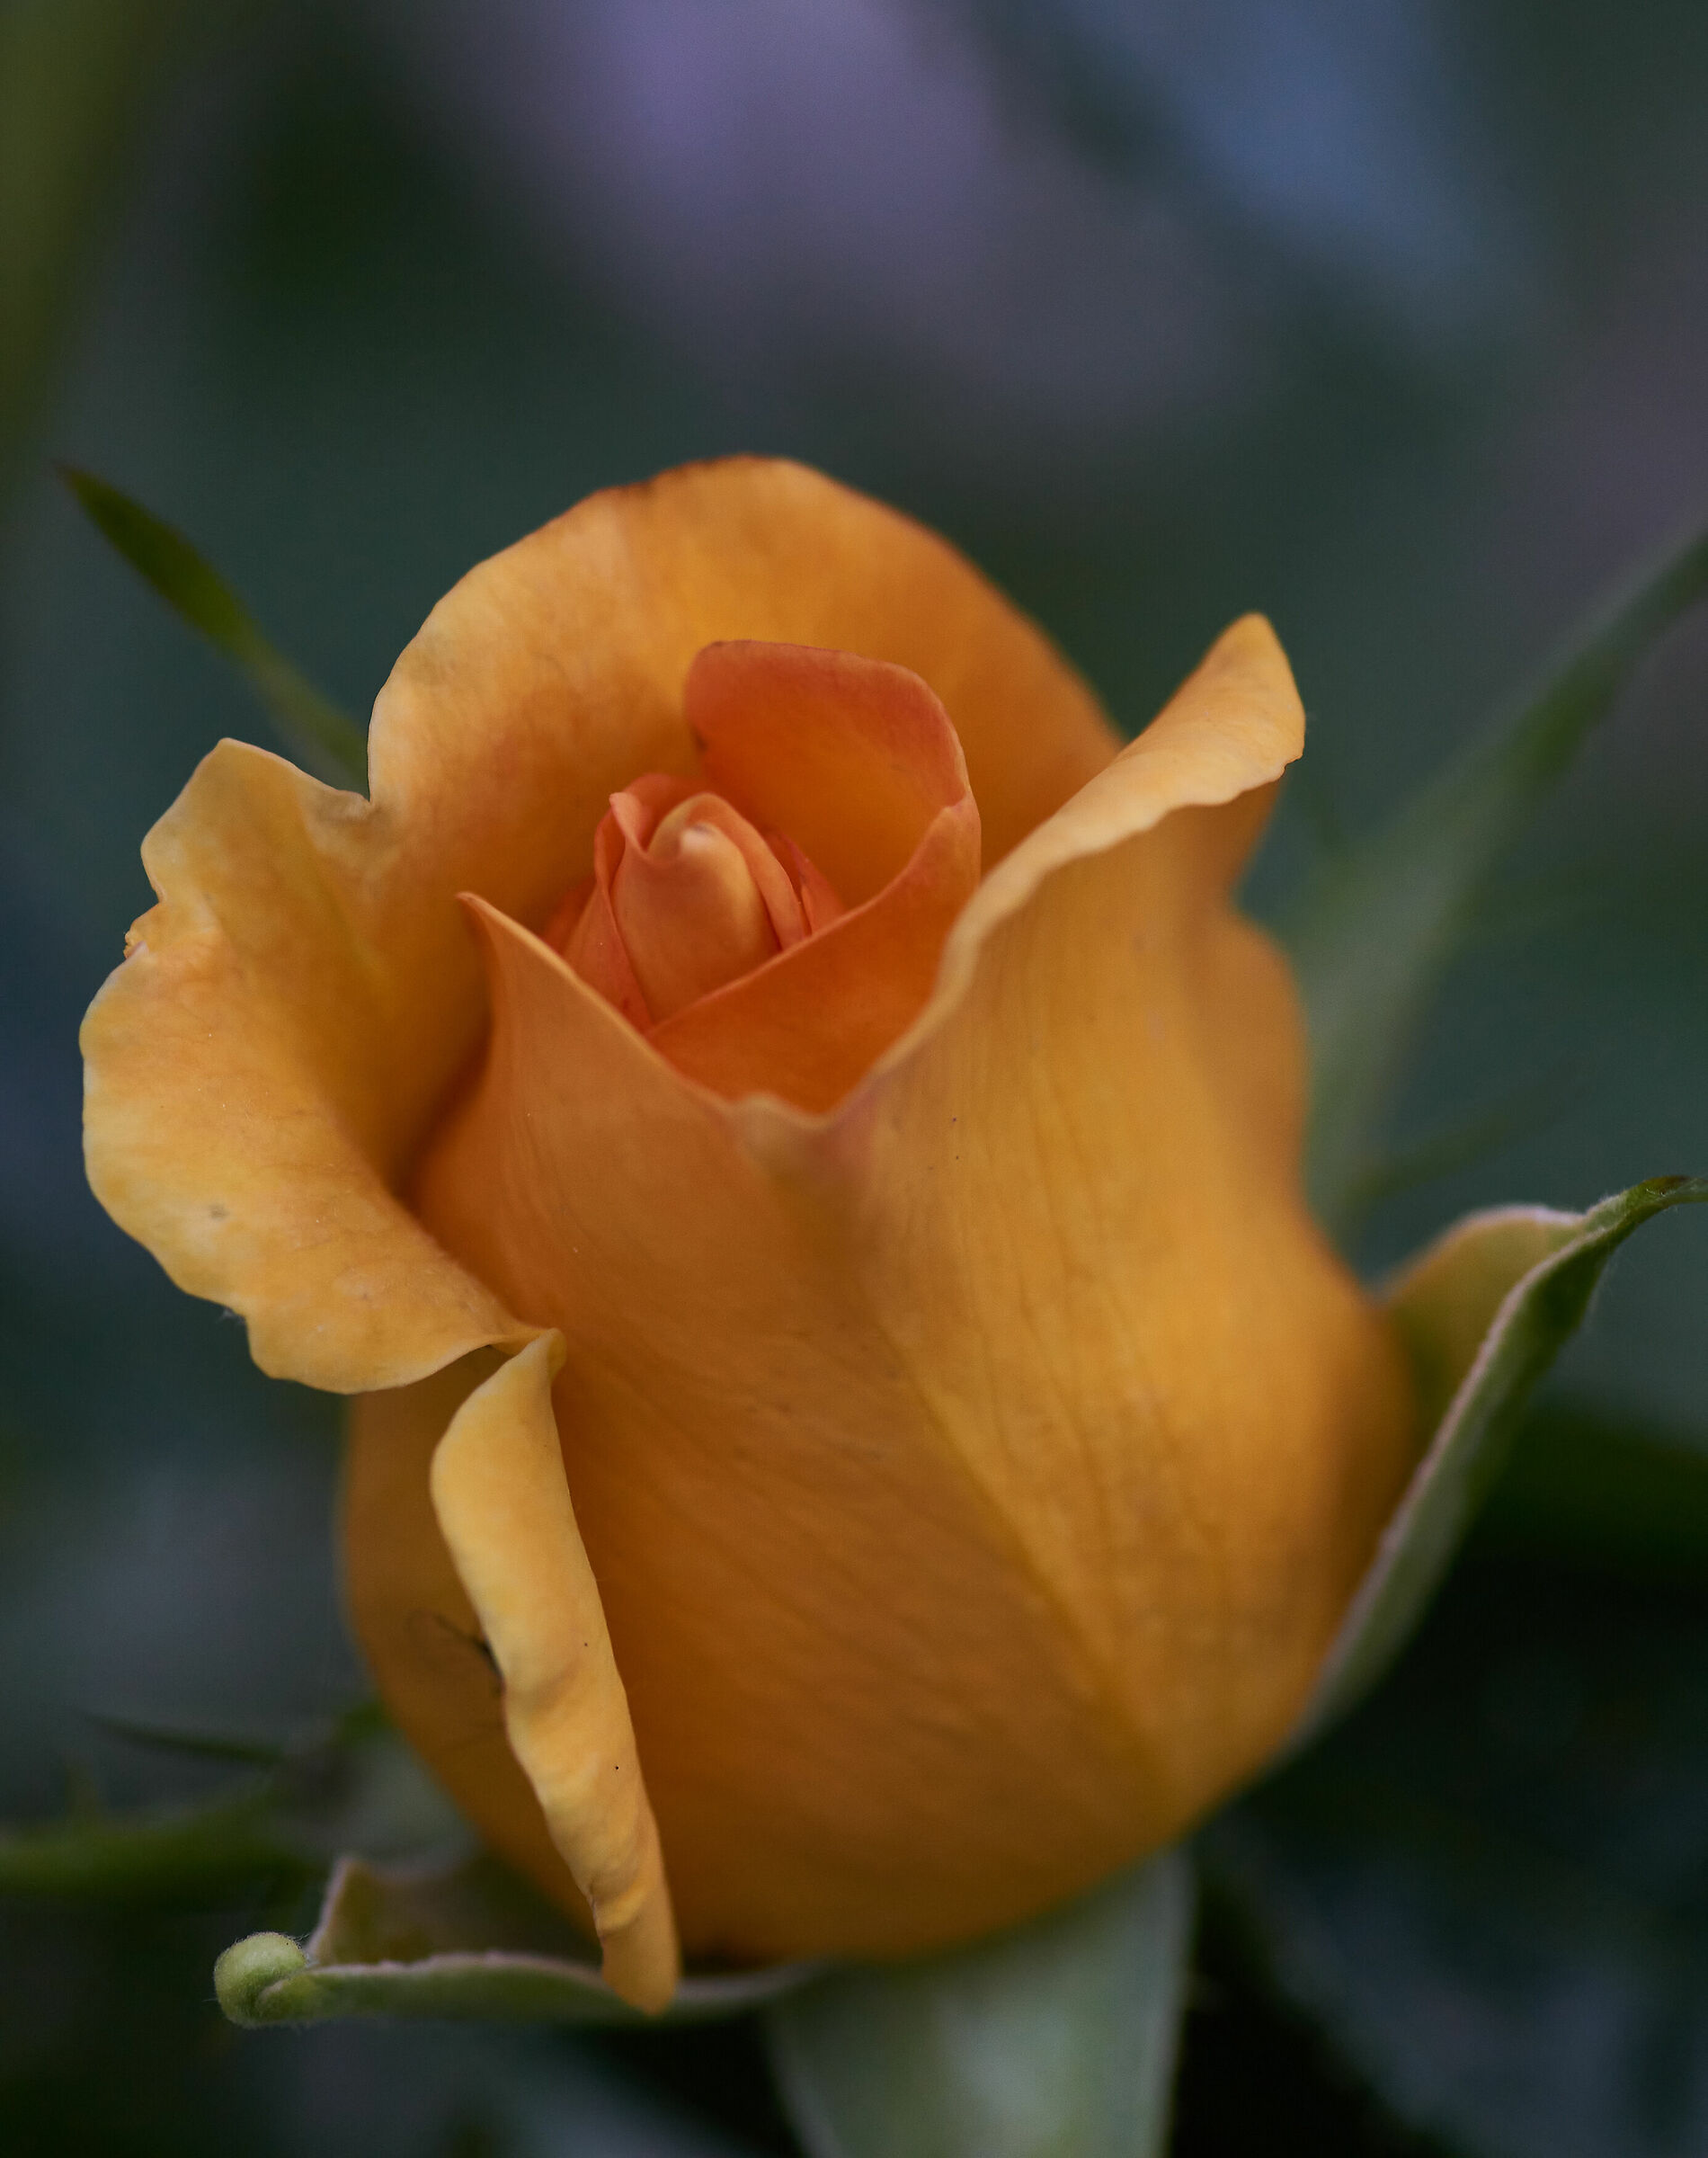 rose in bud...